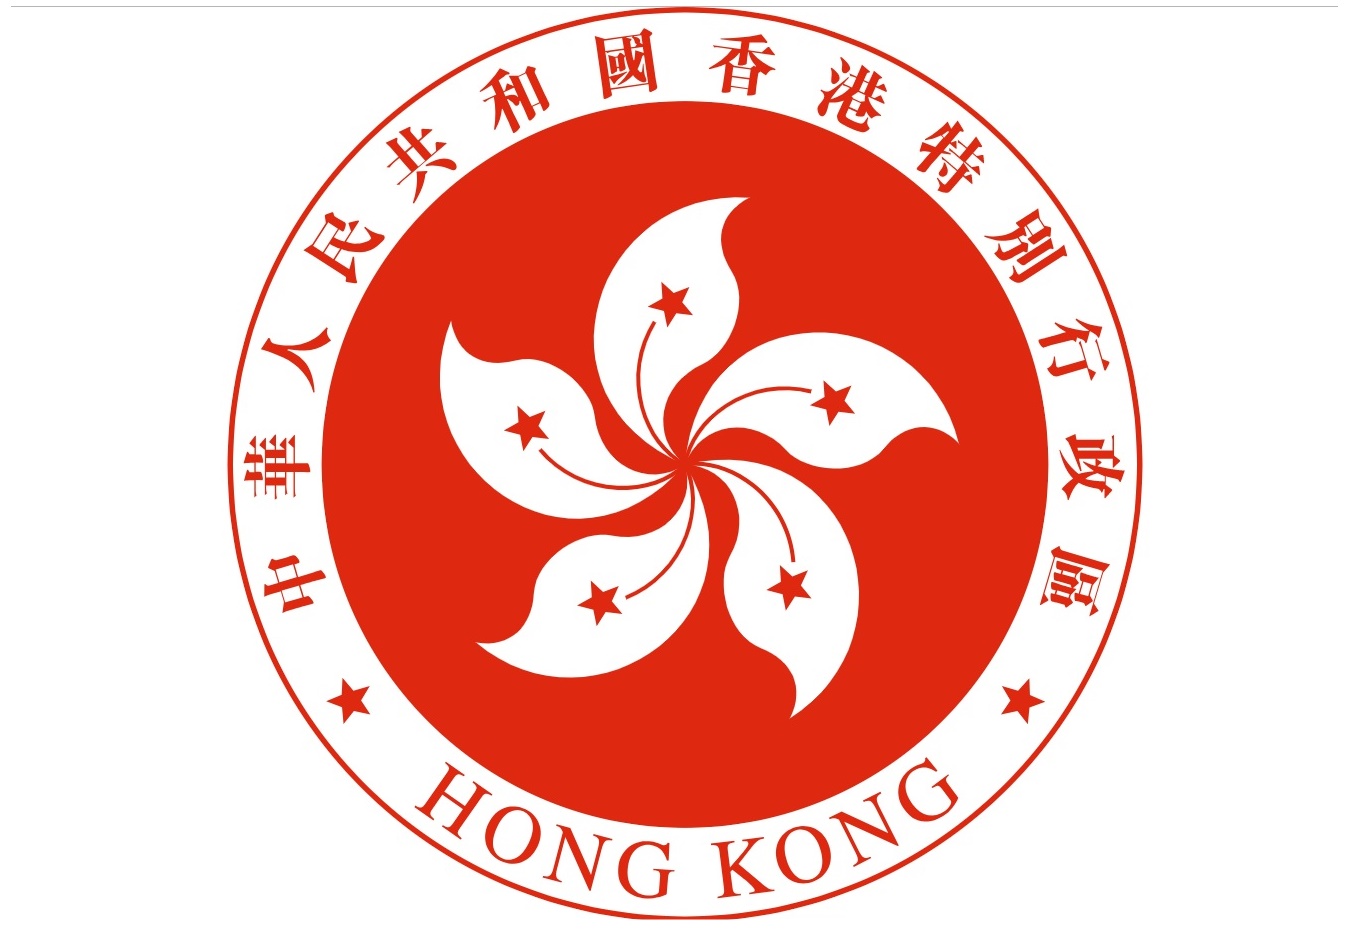 香港特区区旗,区徽设计者何弢去世 林郑月娥哀悼